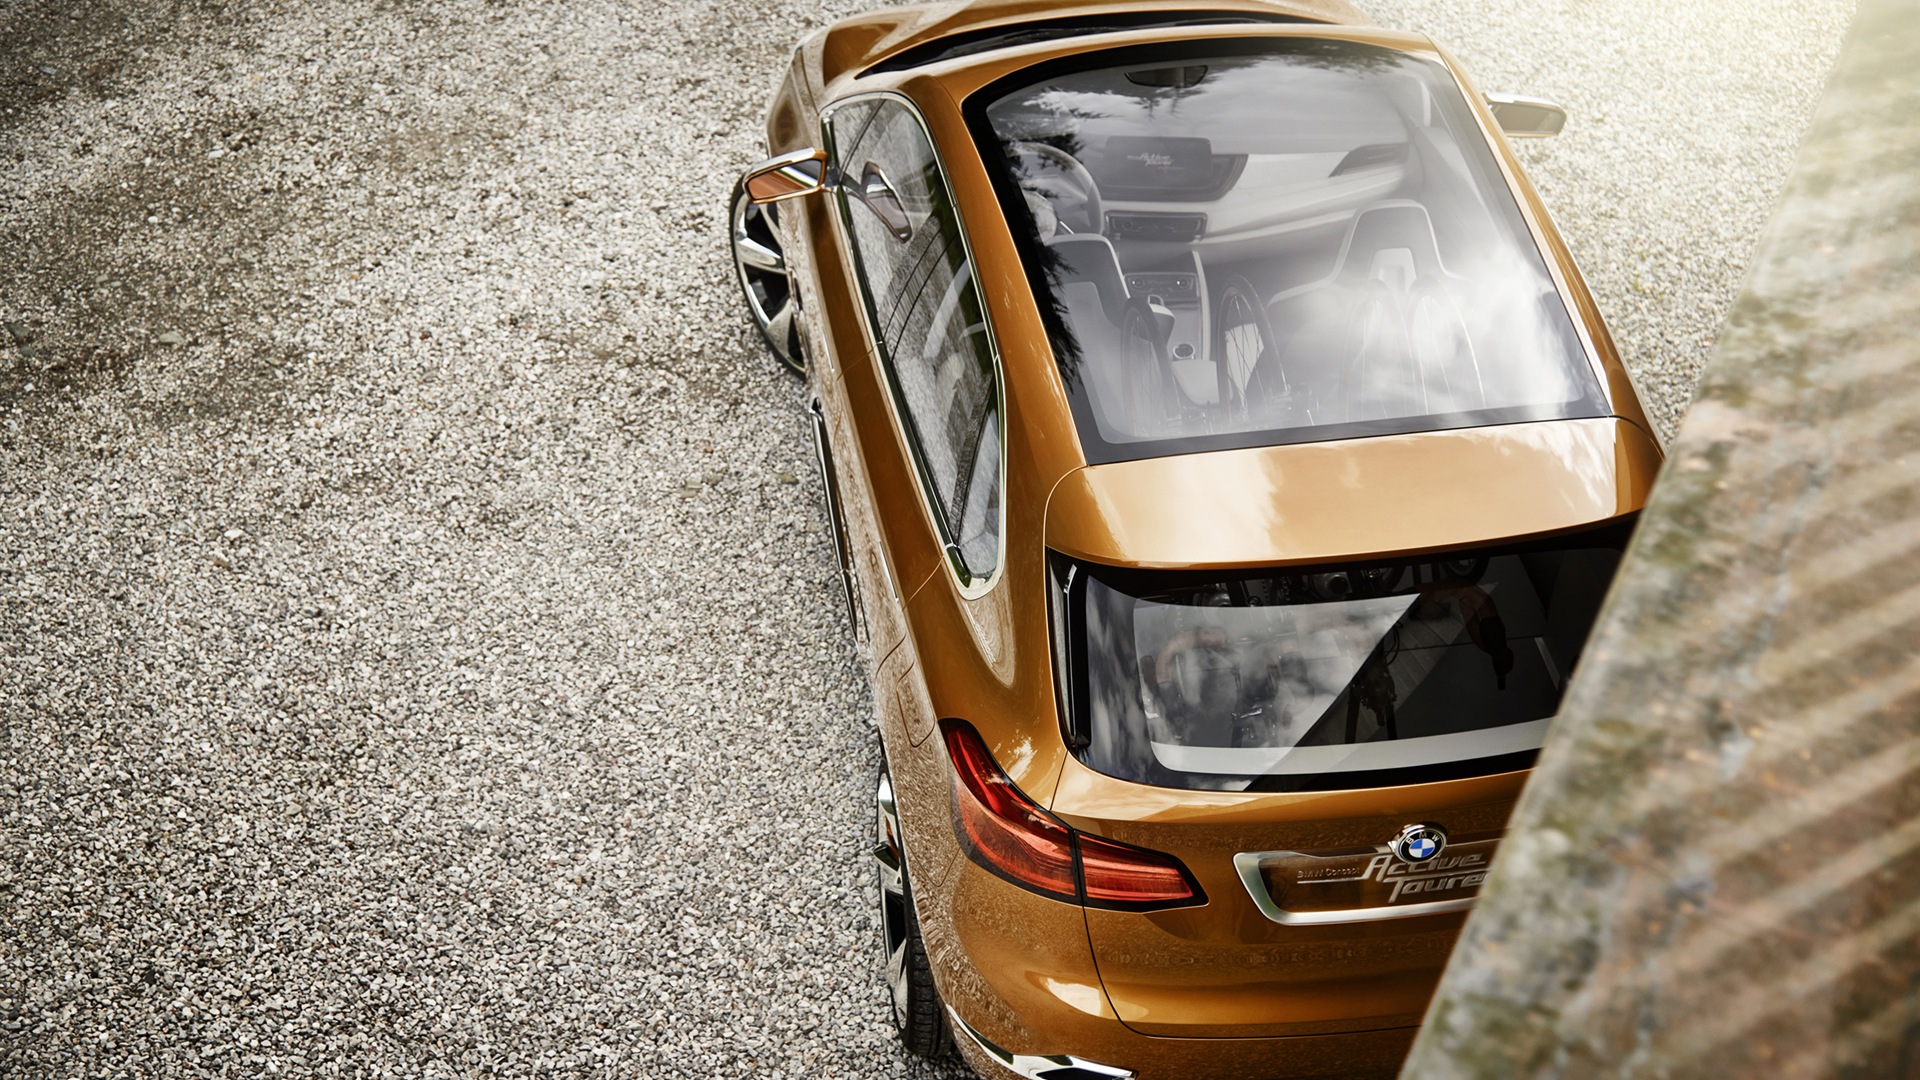 2013 BMW Concept activos Tourer fondos de pantalla de alta definición #12 - 1920x1080